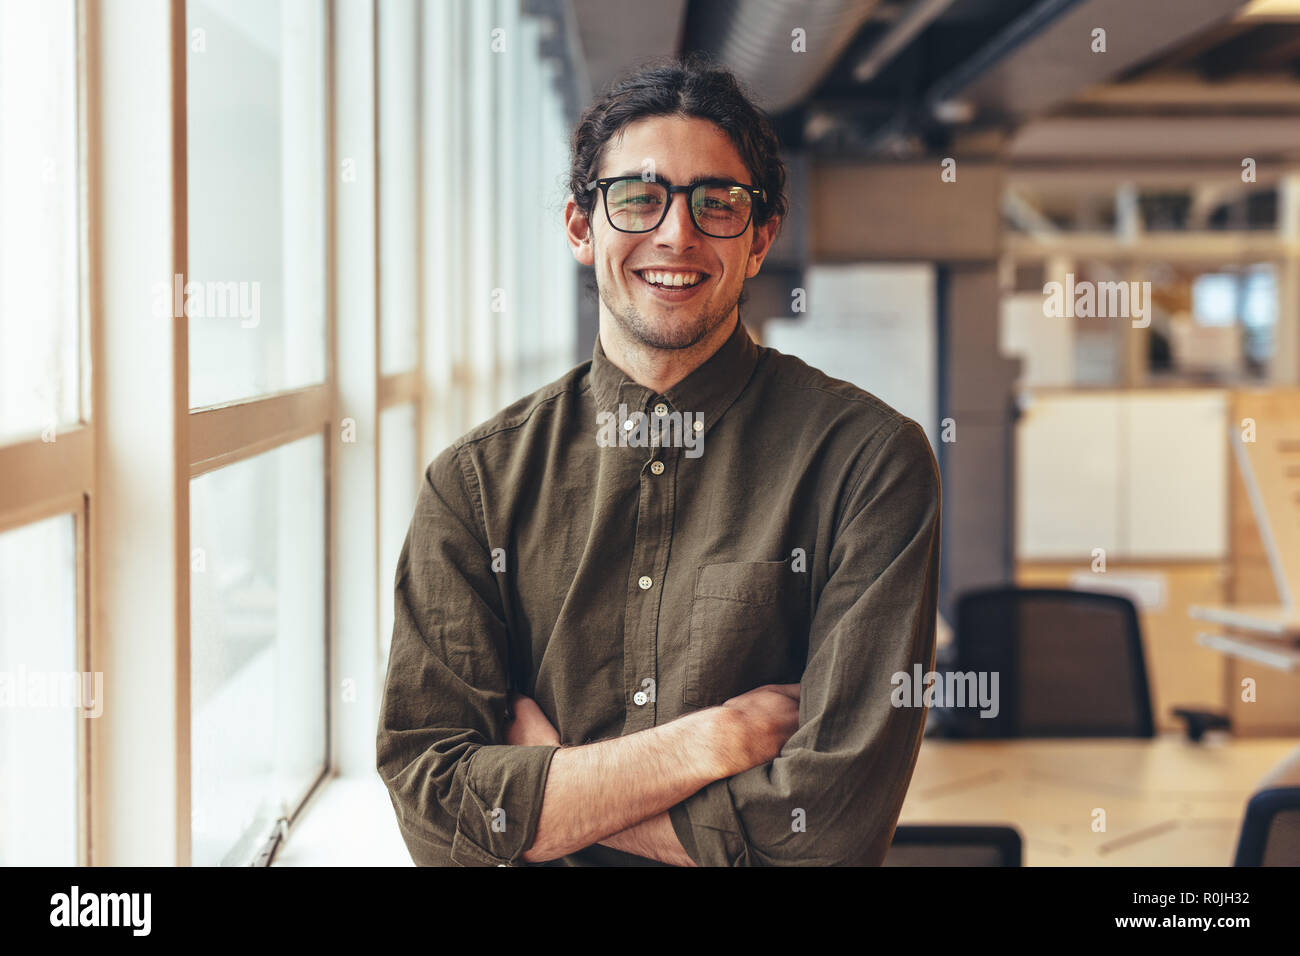 uomo d'affari in piedi accanto a una finestra in ufficio con le braccia incrociate. Ritratto di un uomo sorridente in ufficio accanto a una finestra. Foto Stock